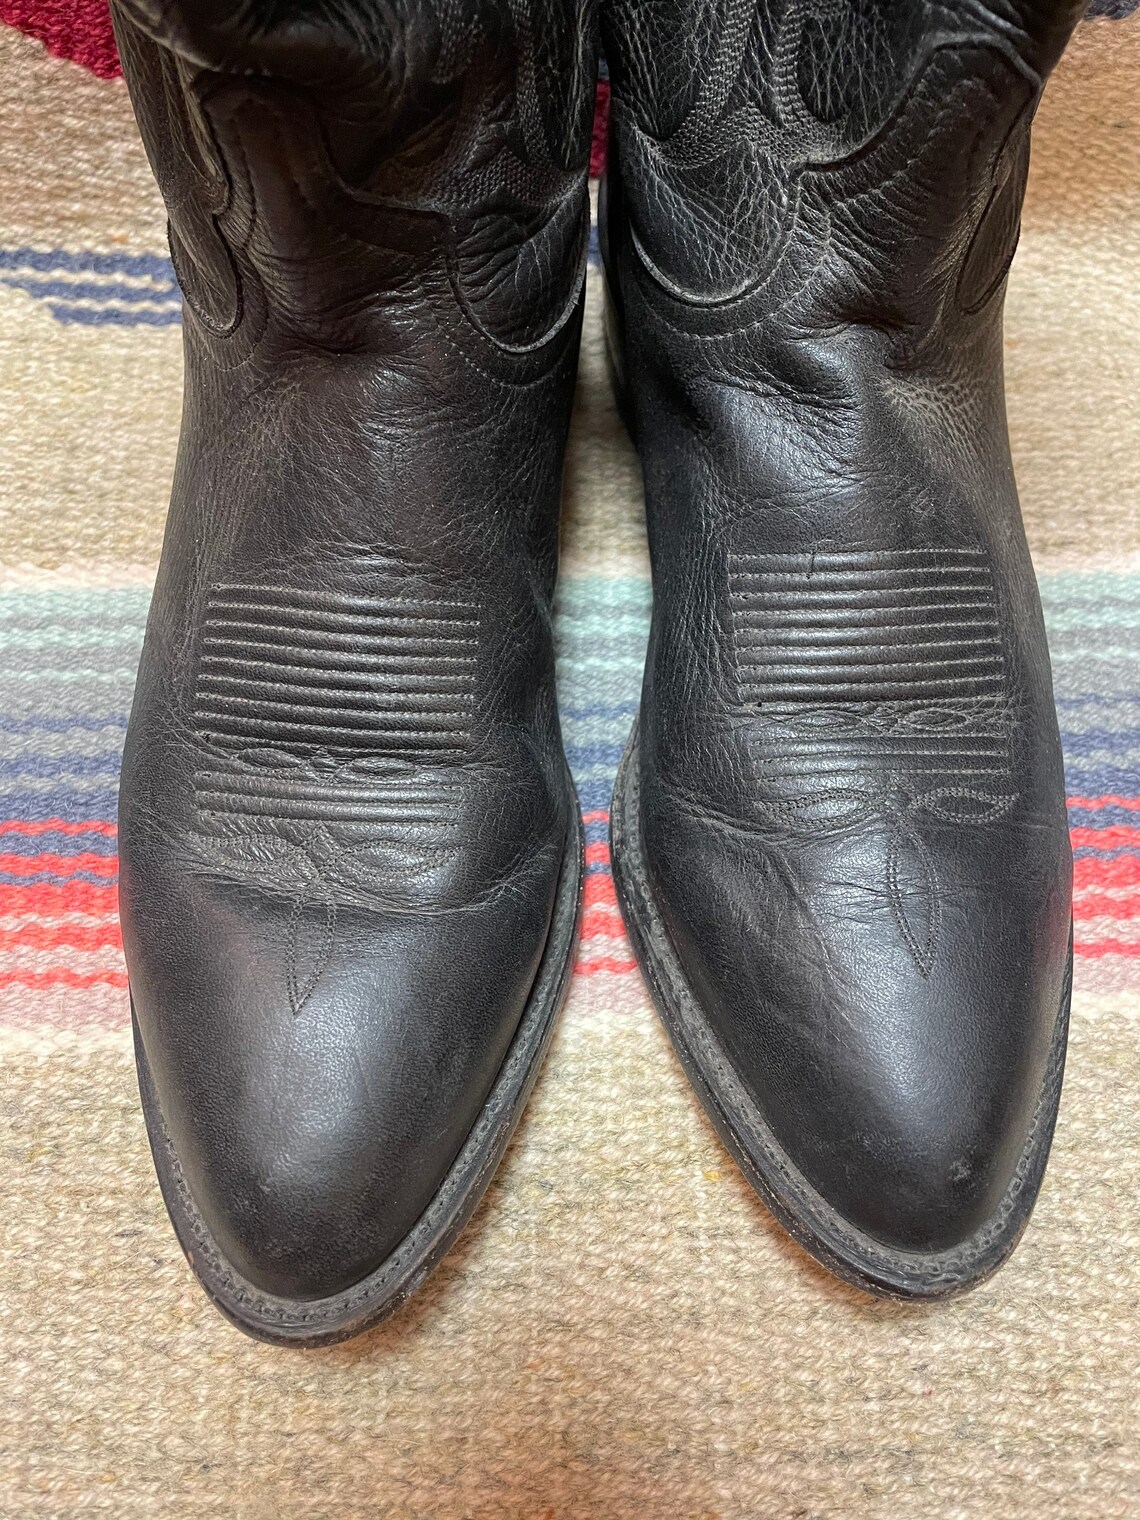 Tony Lama Vintage Mens Broken-In Black Leather Cowboy Western | Etsy